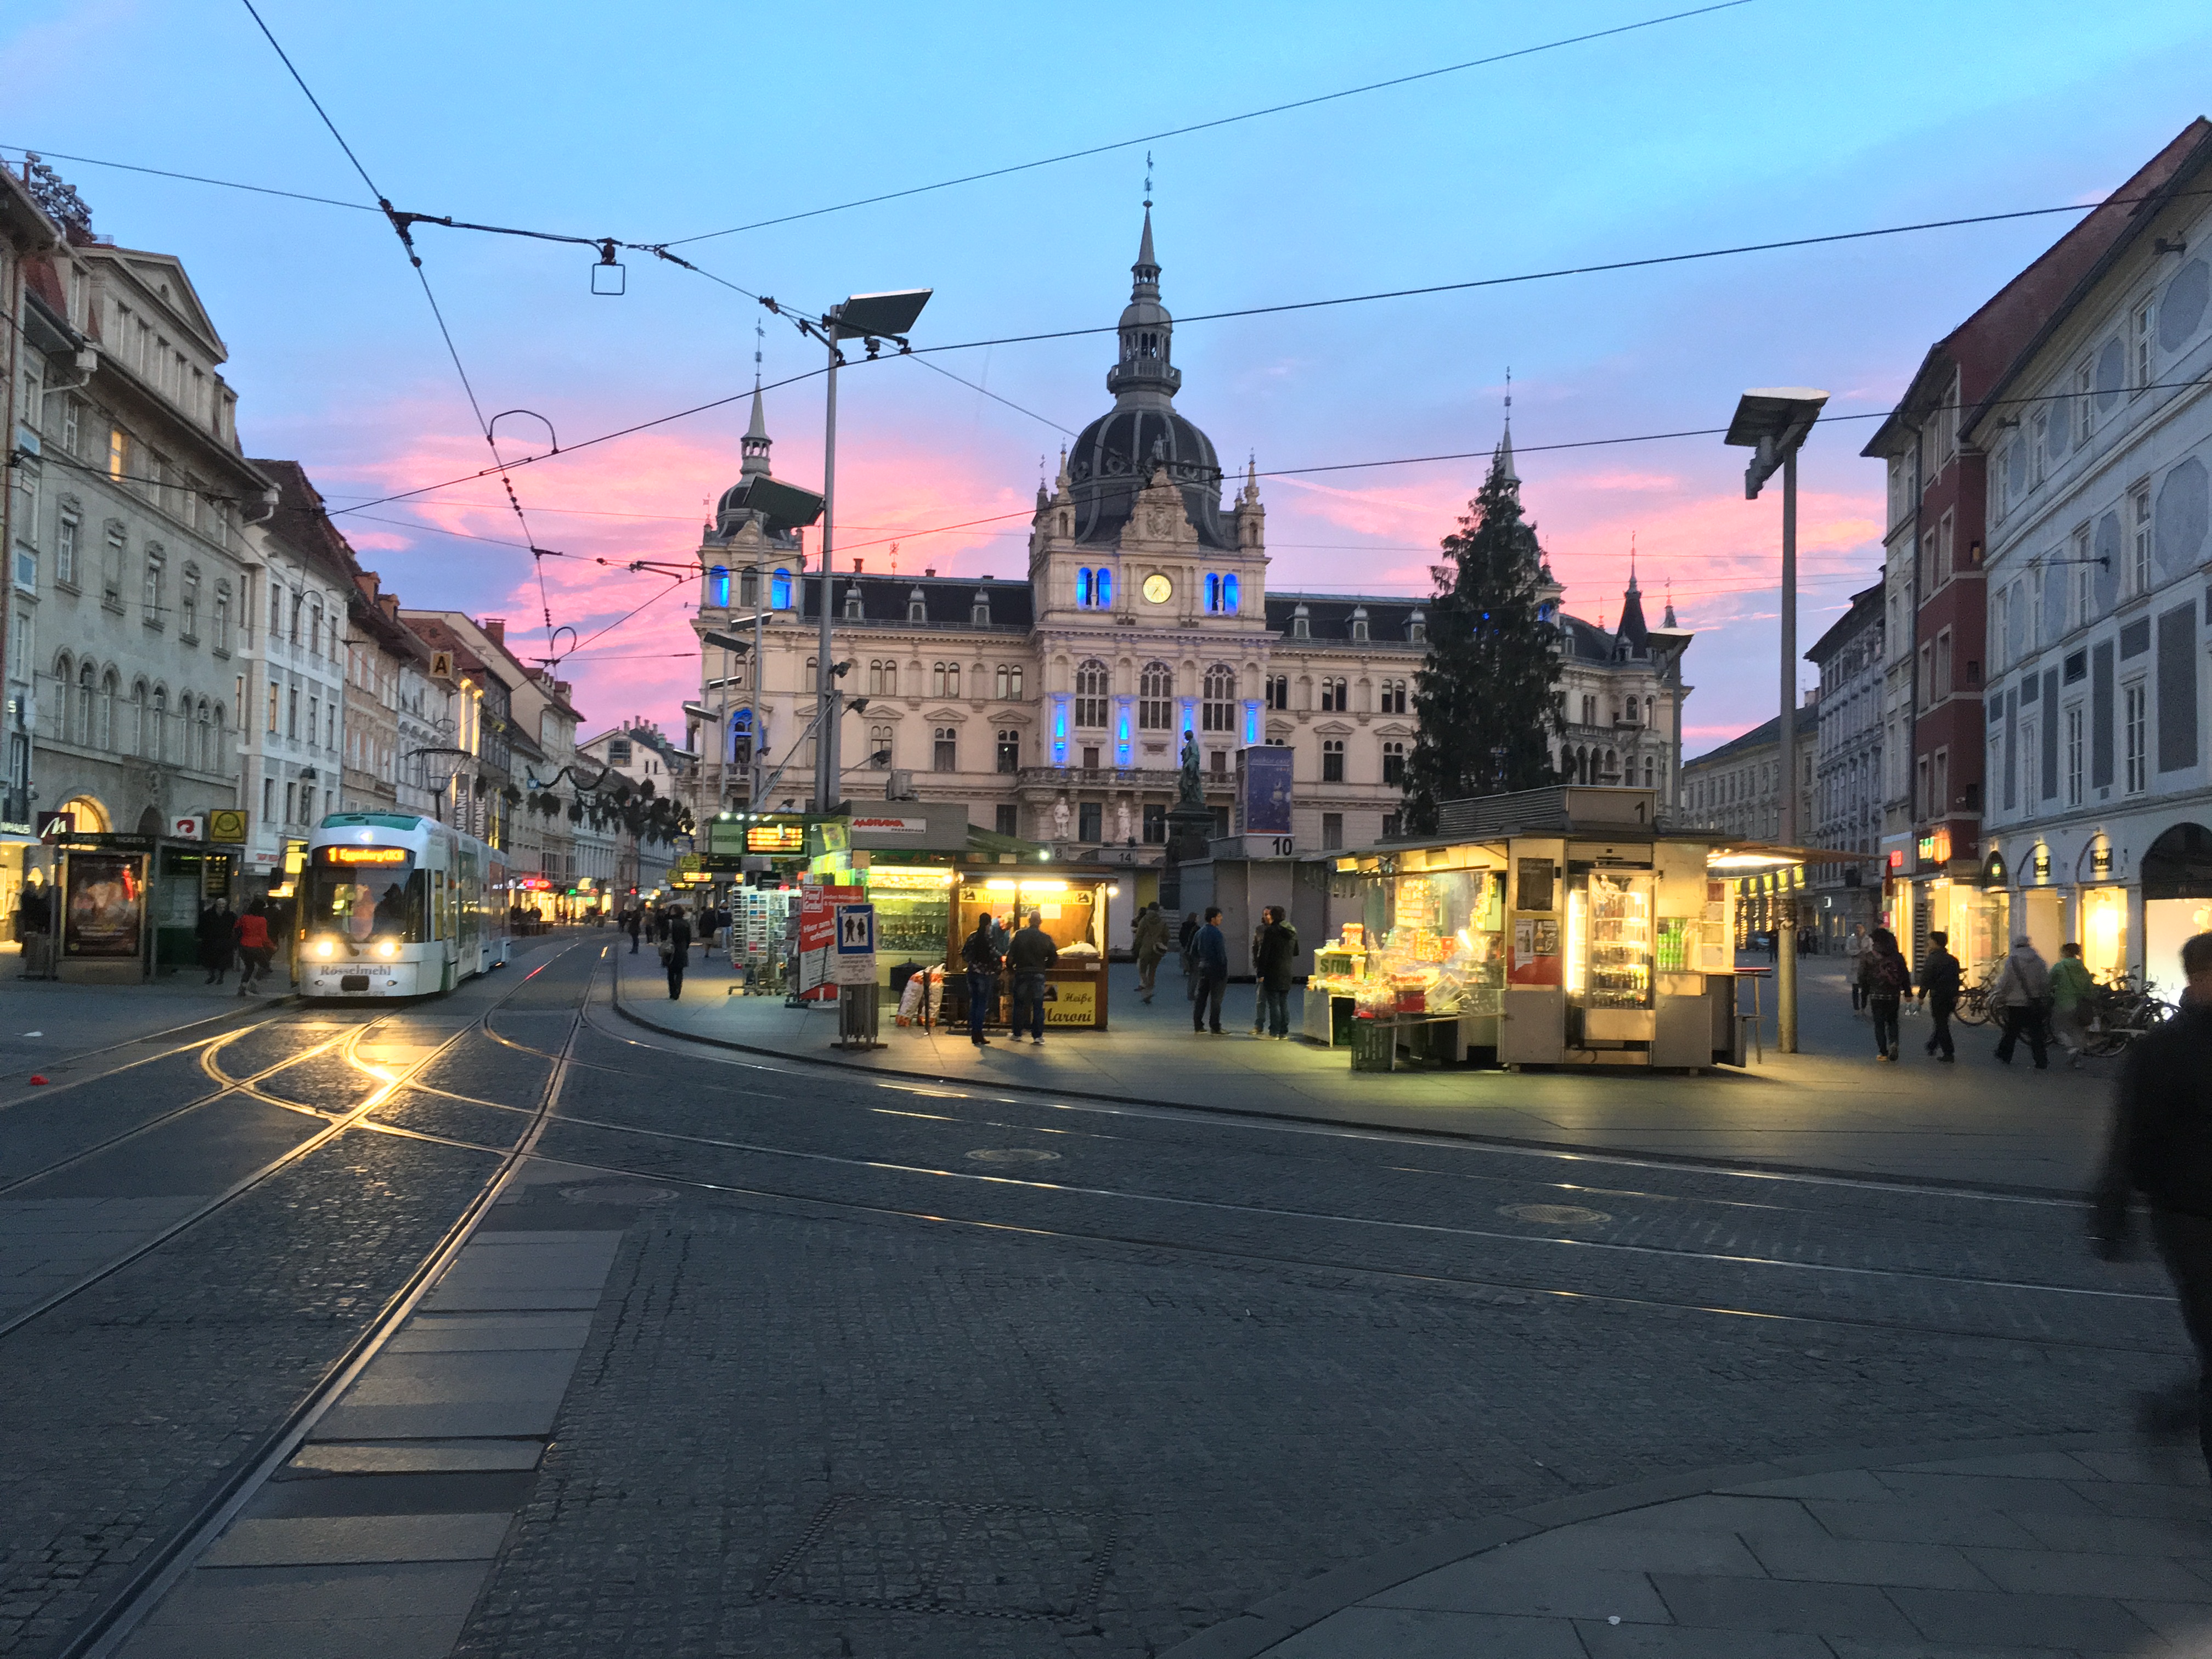 Graz Hauptplatz / main square